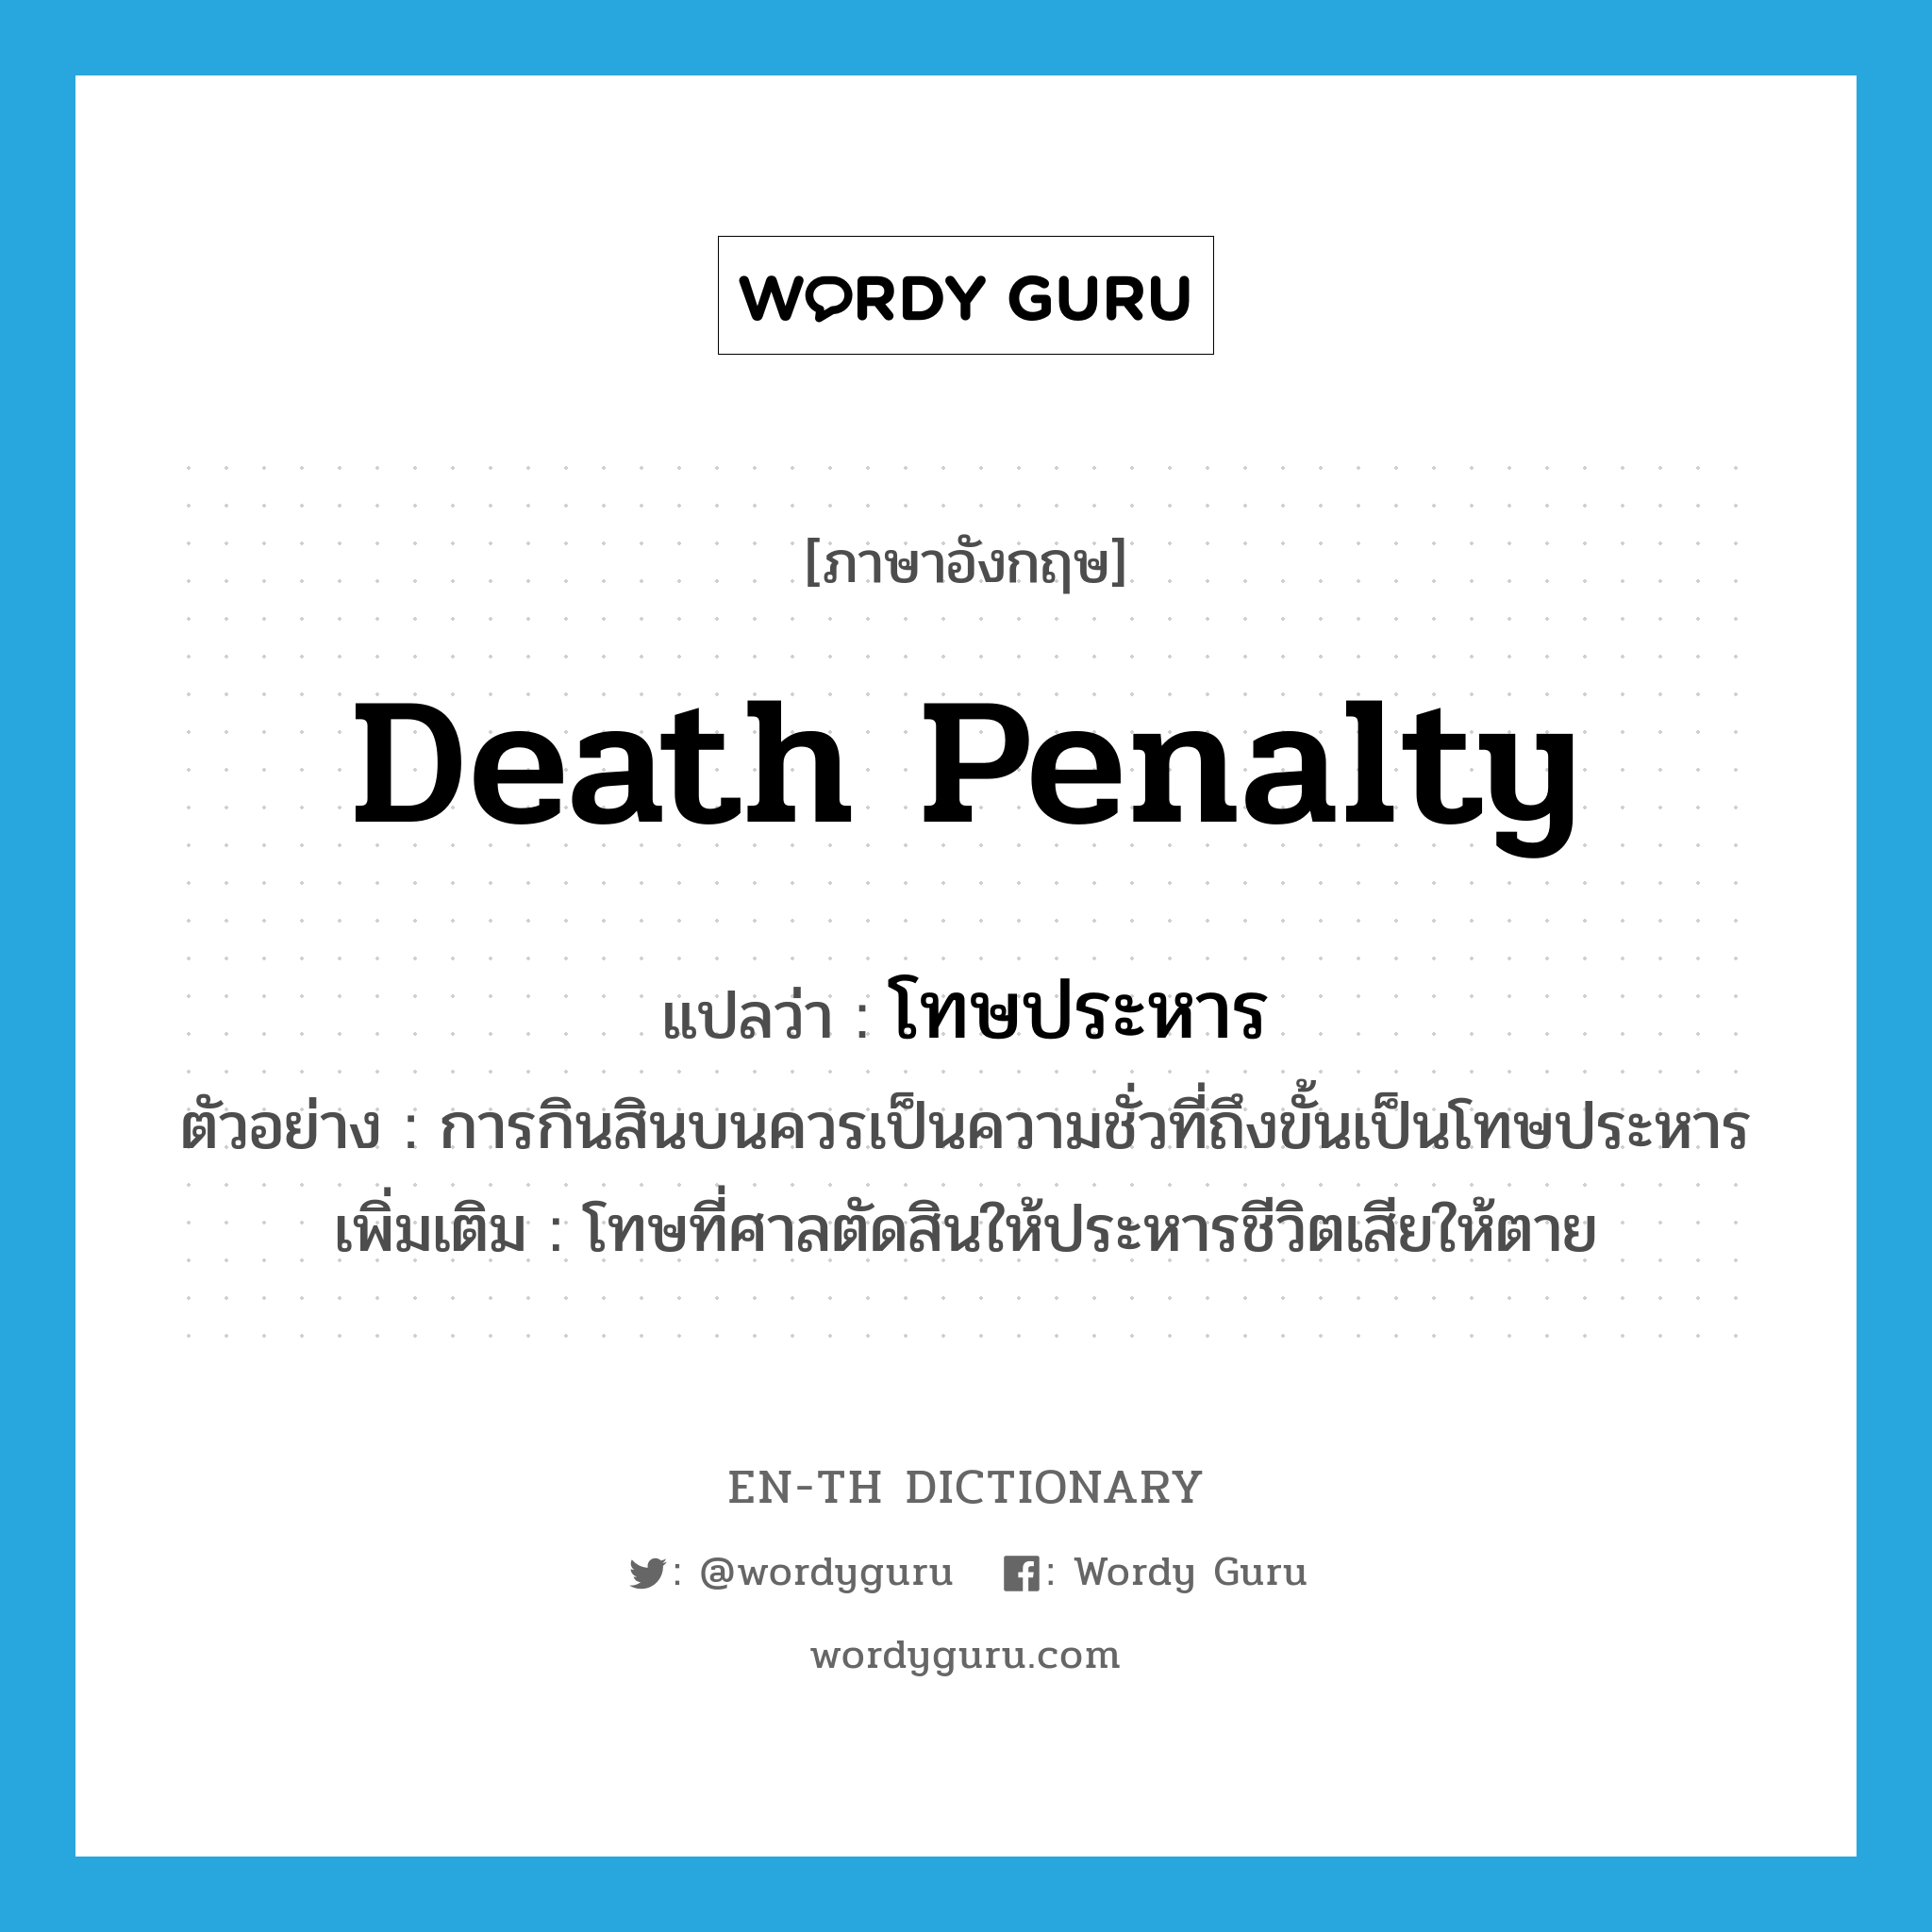 death penalty แปลว่า?, คำศัพท์ภาษาอังกฤษ death penalty แปลว่า โทษประหาร ประเภท N ตัวอย่าง การกินสินบนควรเป็นความชั่วที่ถึงขั้นเป็นโทษประหาร เพิ่มเติม โทษที่ศาลตัดสินให้ประหารชีวิตเสียให้ตาย หมวด N